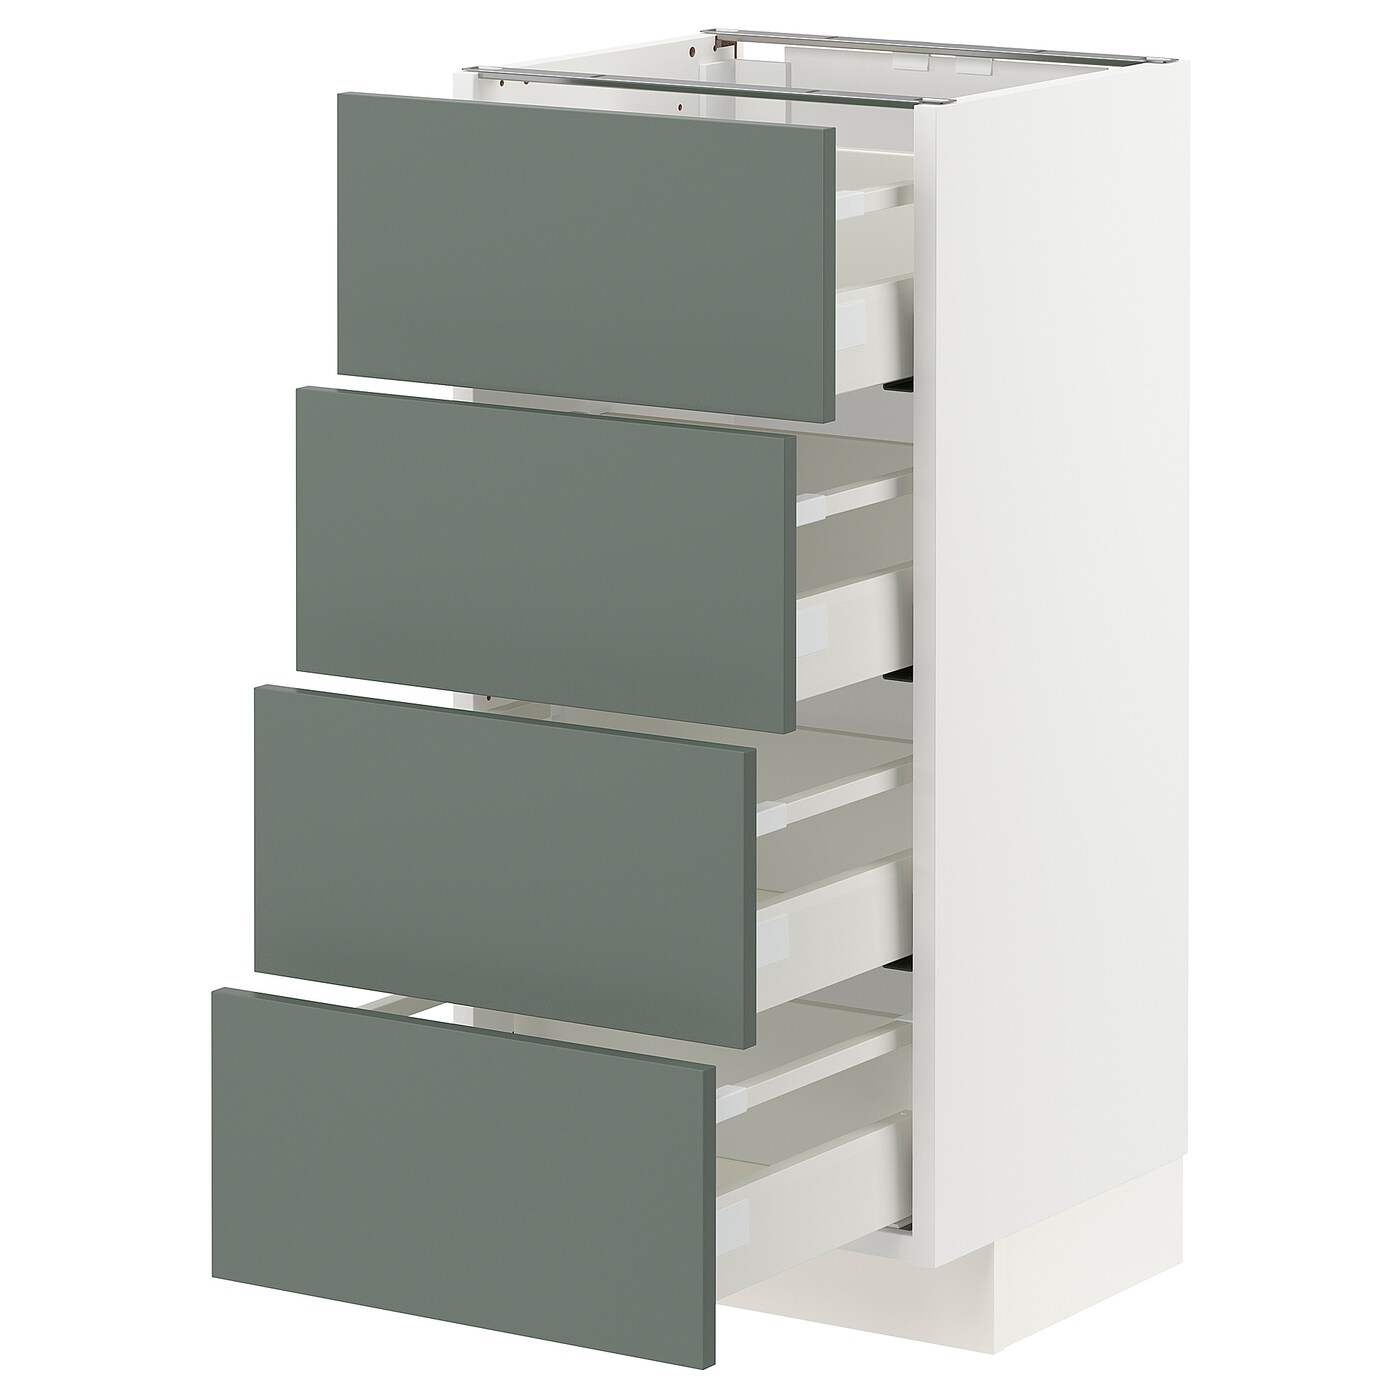 Напольный кухонный шкаф  - IKEA METOD MAXIMERA, 88x39x40см, белый/серо-зеленый, МЕТОД МАКСИМЕРА ИКЕА